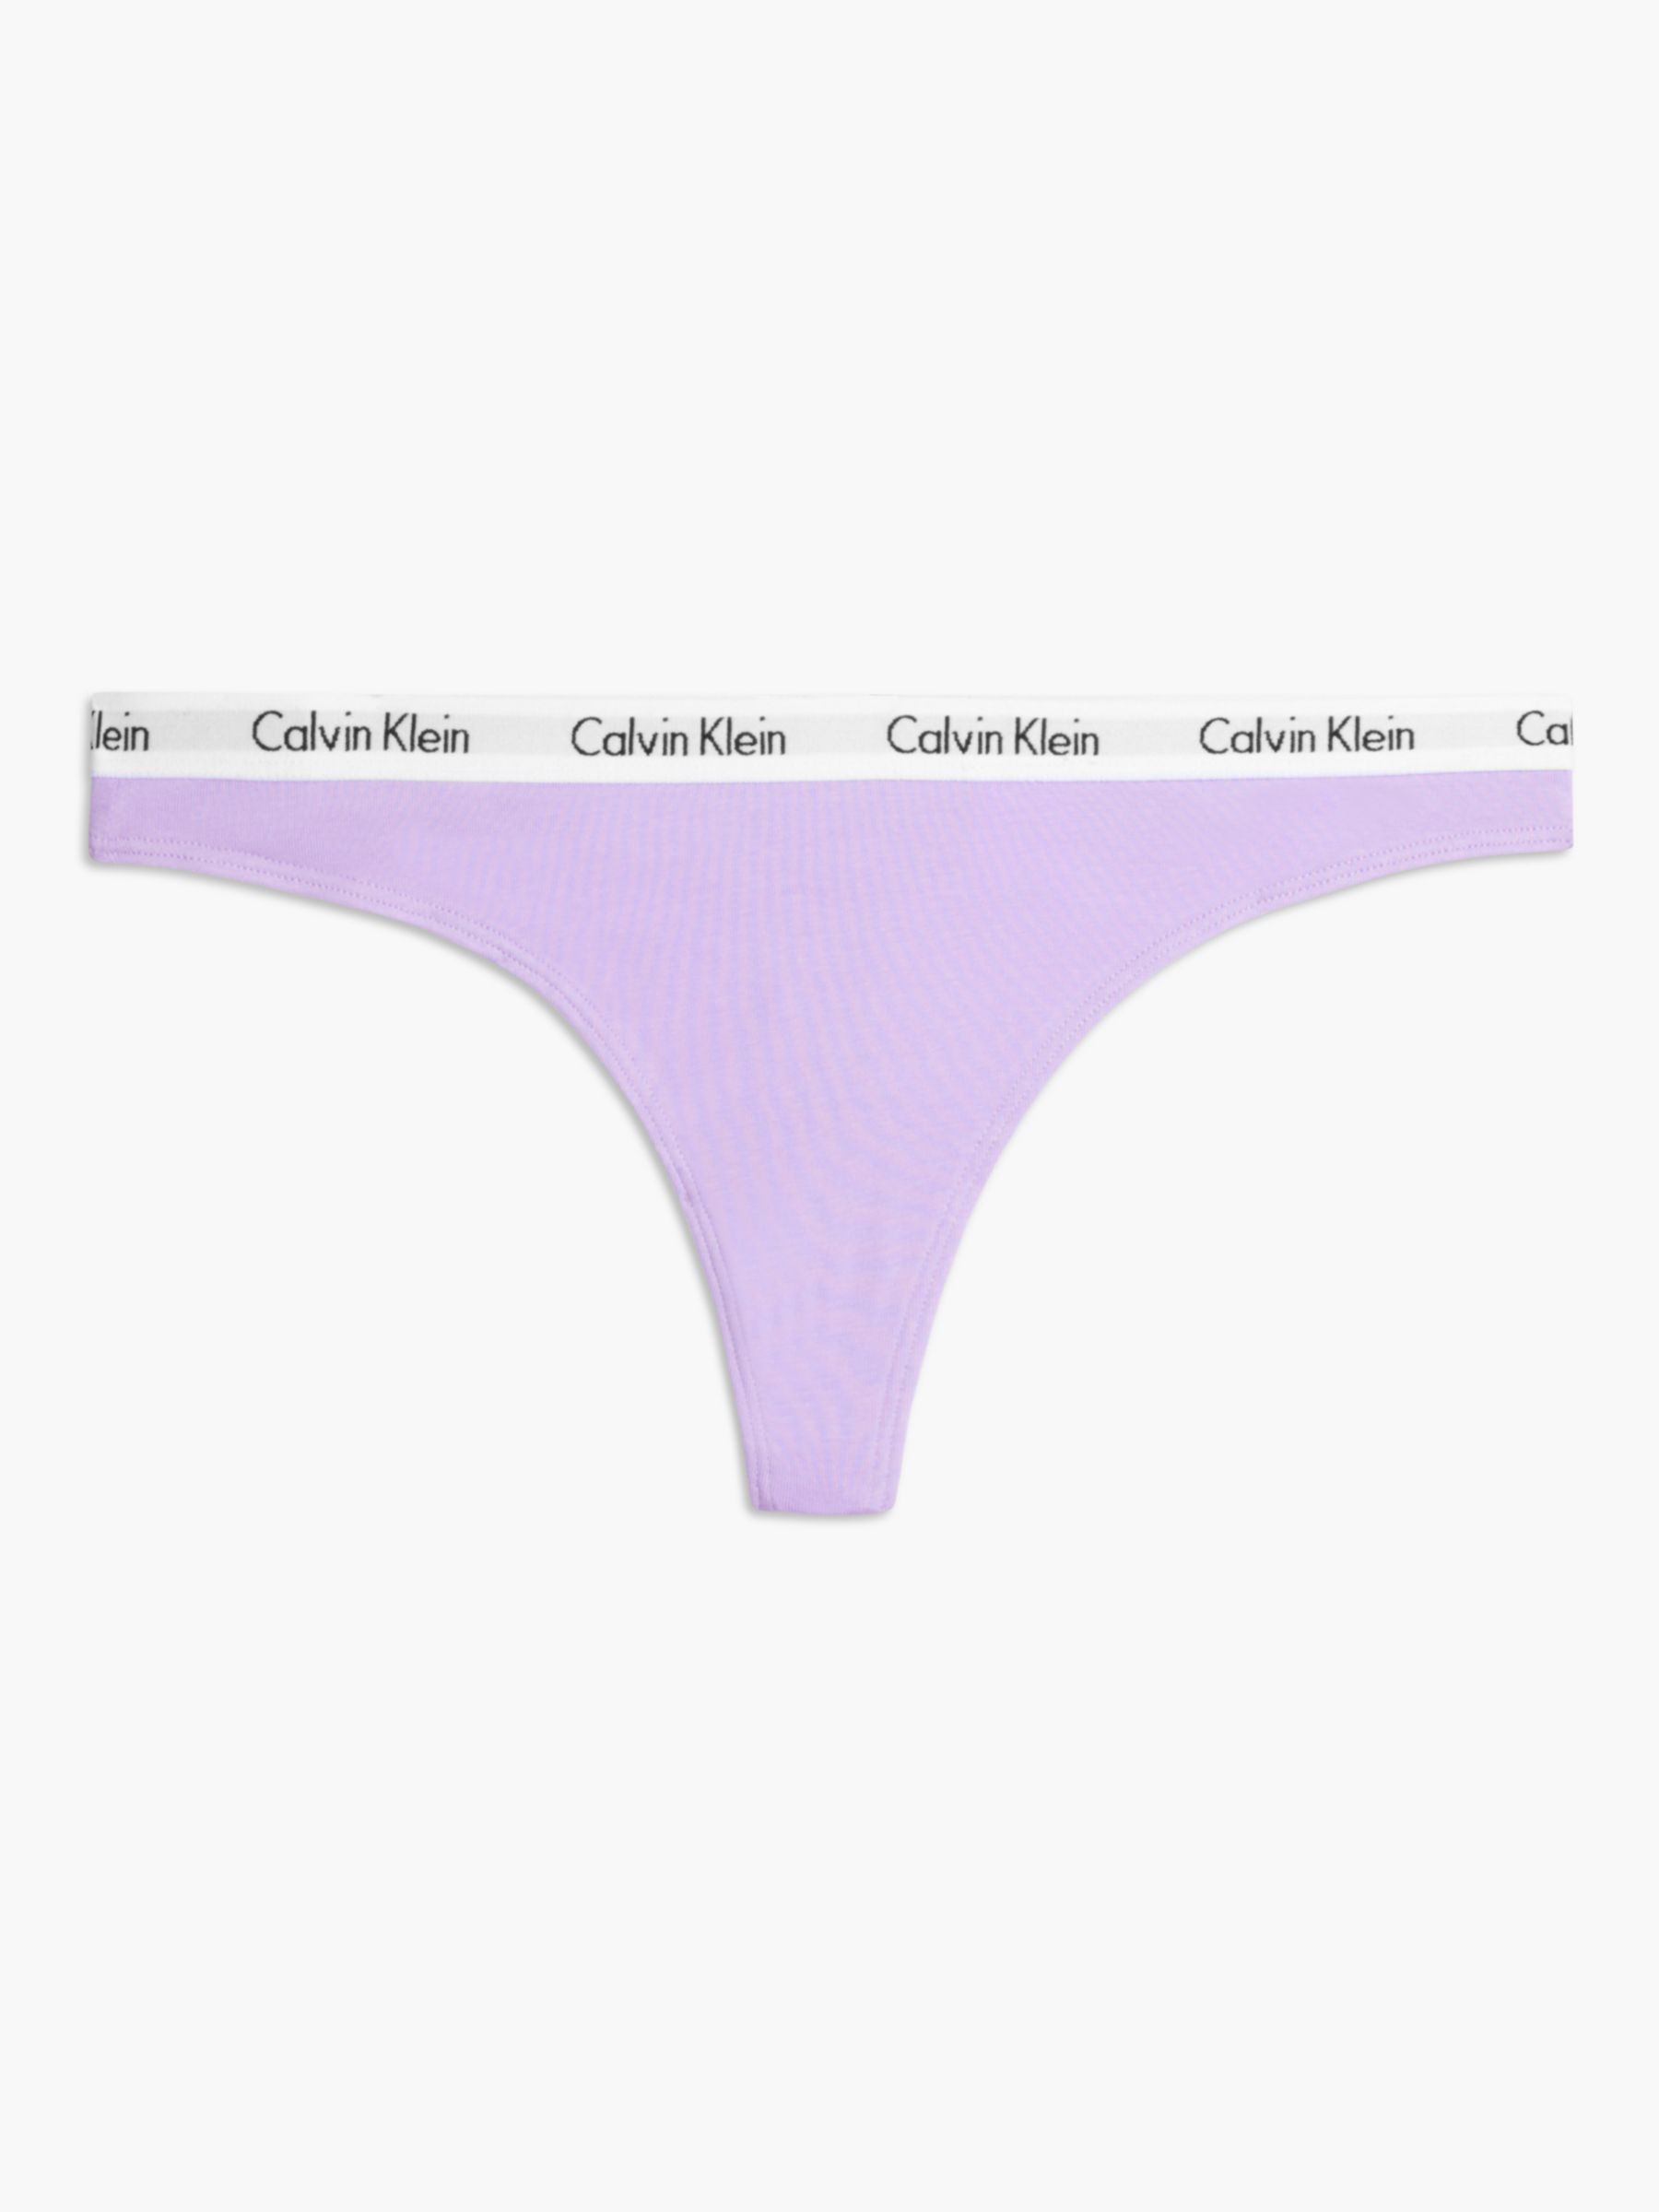 Calvin Klein Carousel Thong, Pastel Lilac at John Lewis & Partners